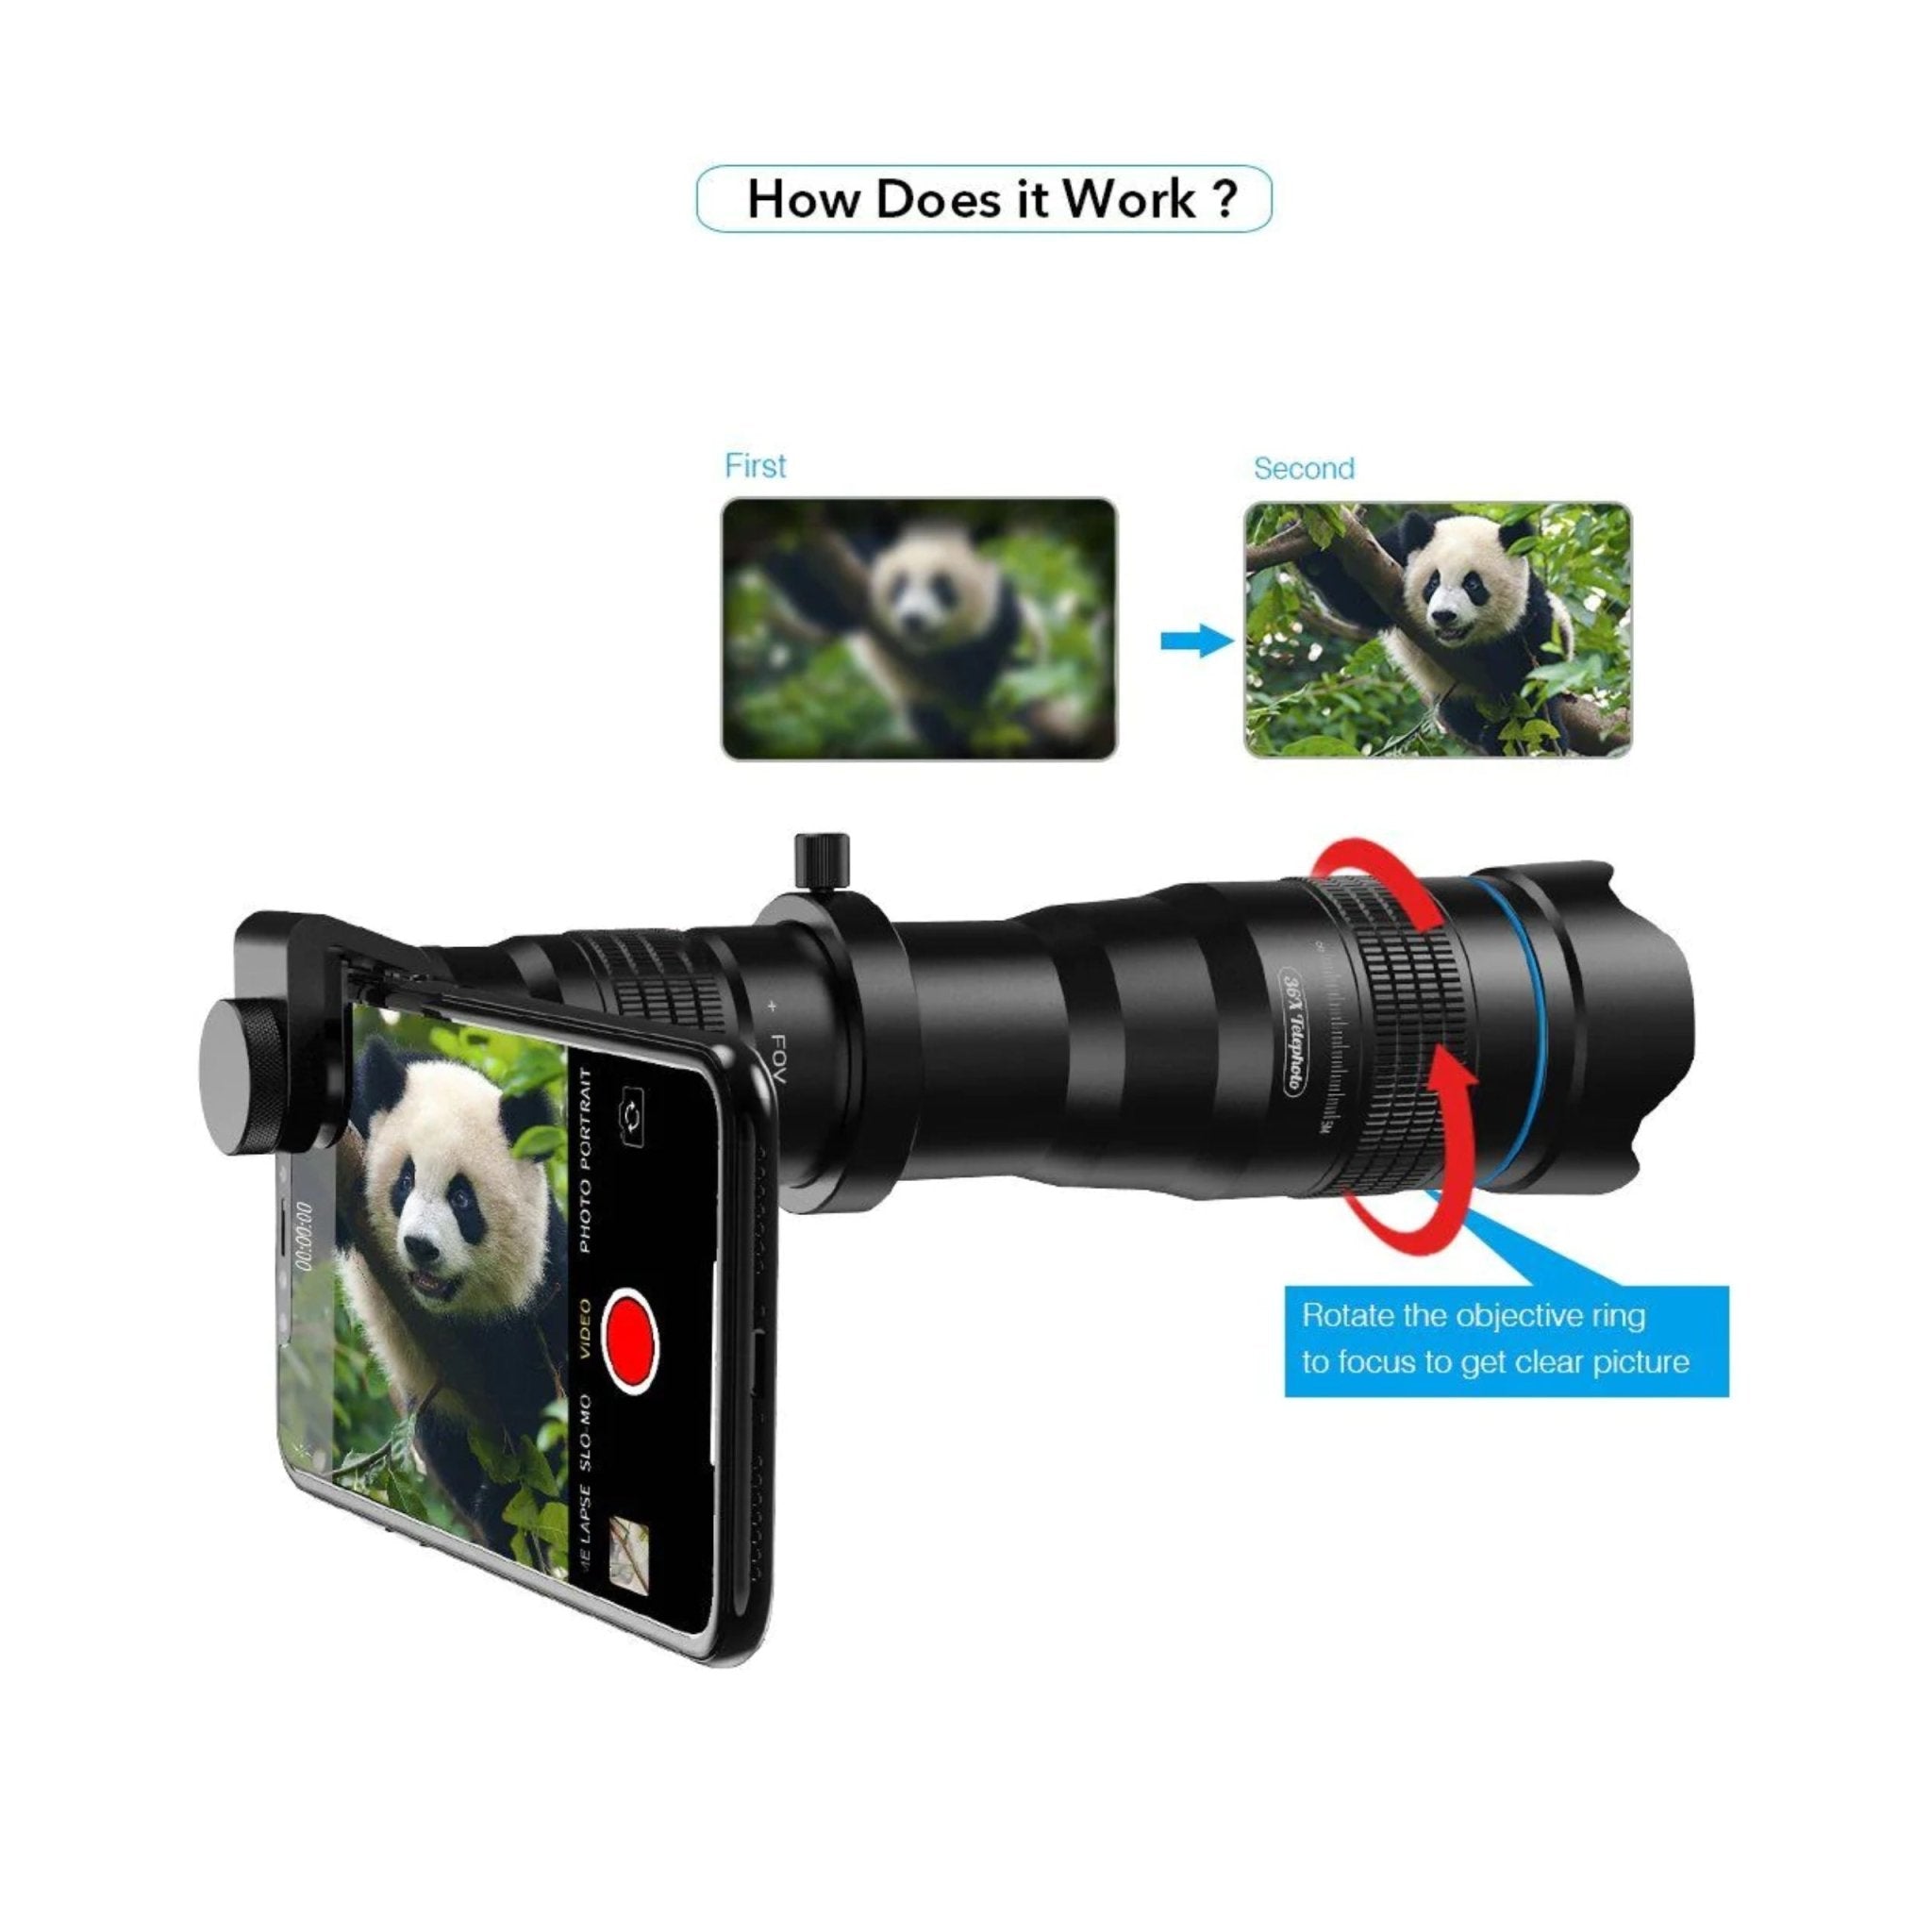 Apexel 36X Telephoto Smartphone Lens - Black